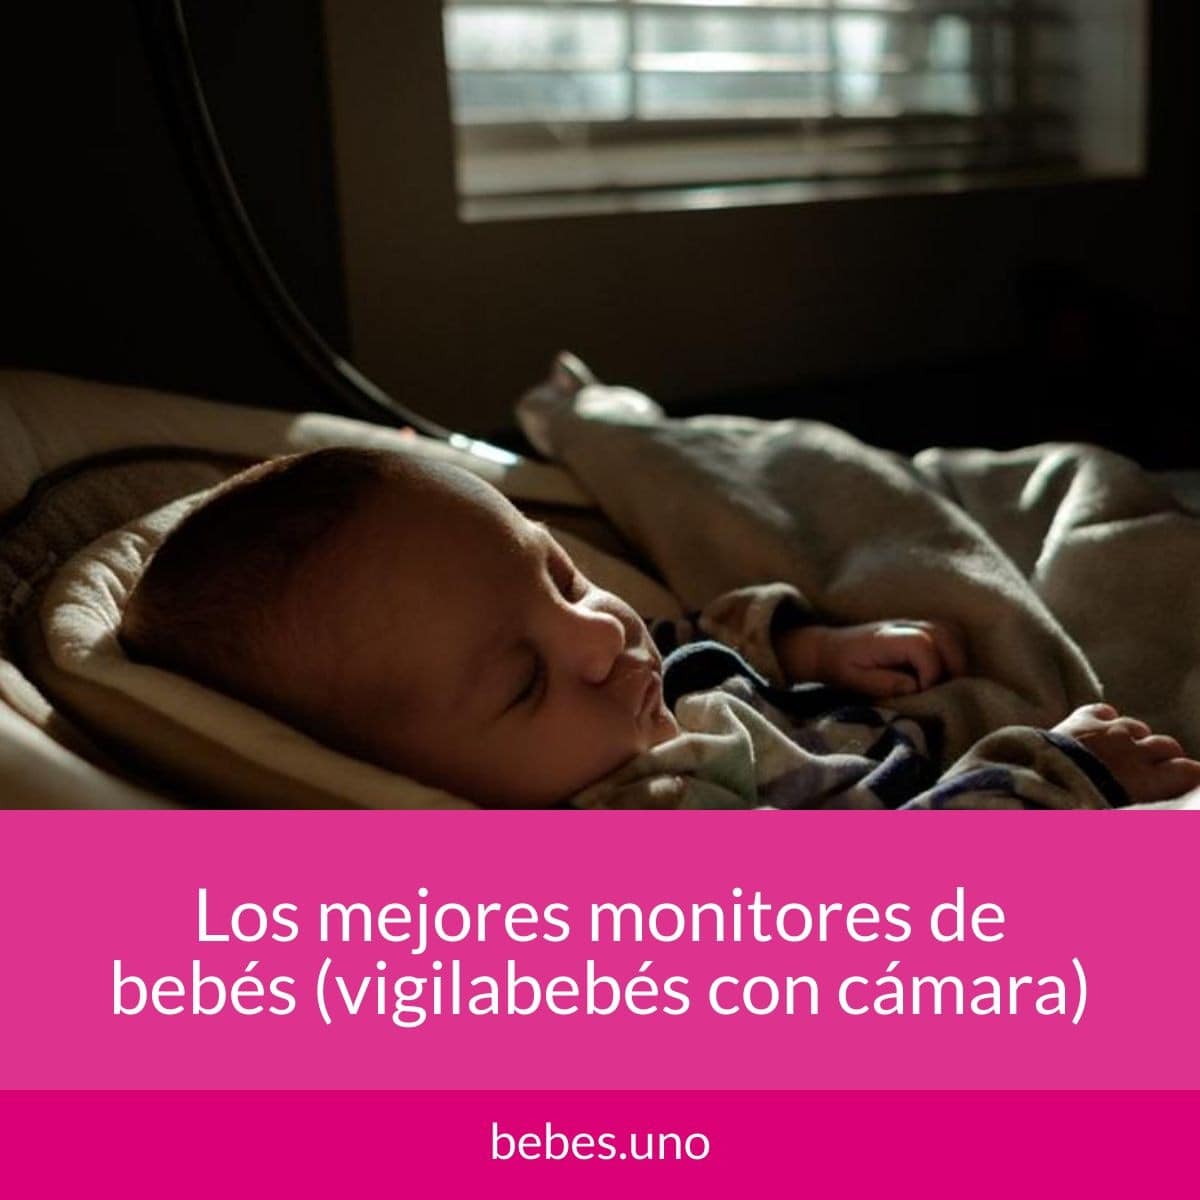 Los mejores monitores de bebés (vigilabebés con cámara)